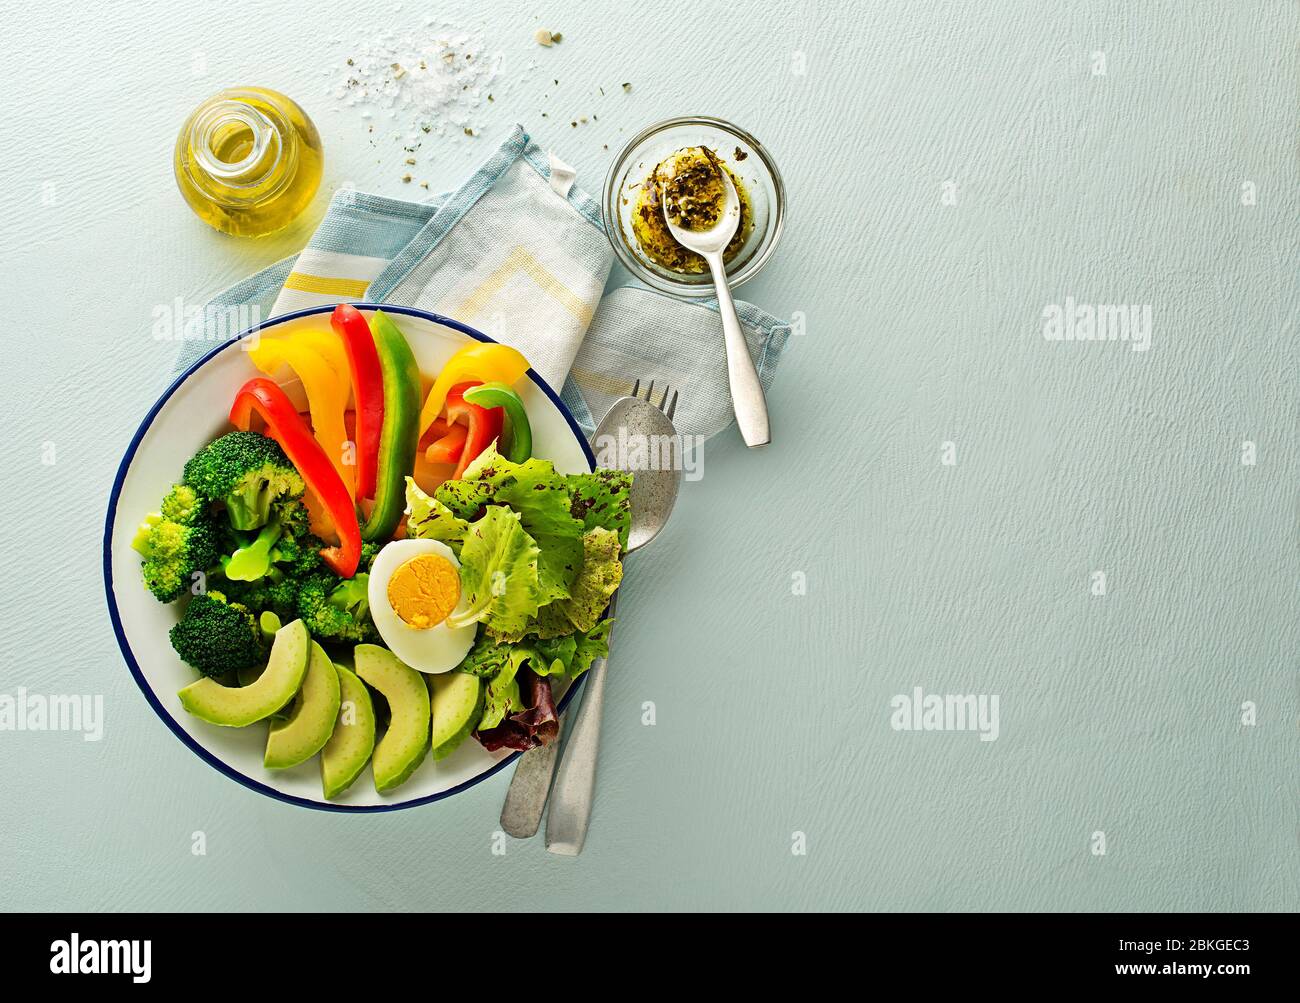 Repas de salade sain avec légumes frais mélangés, avocat et œuf sur fond bleu vue du dessus. Alimentation et santé. Concept de repas sain Banque D'Images